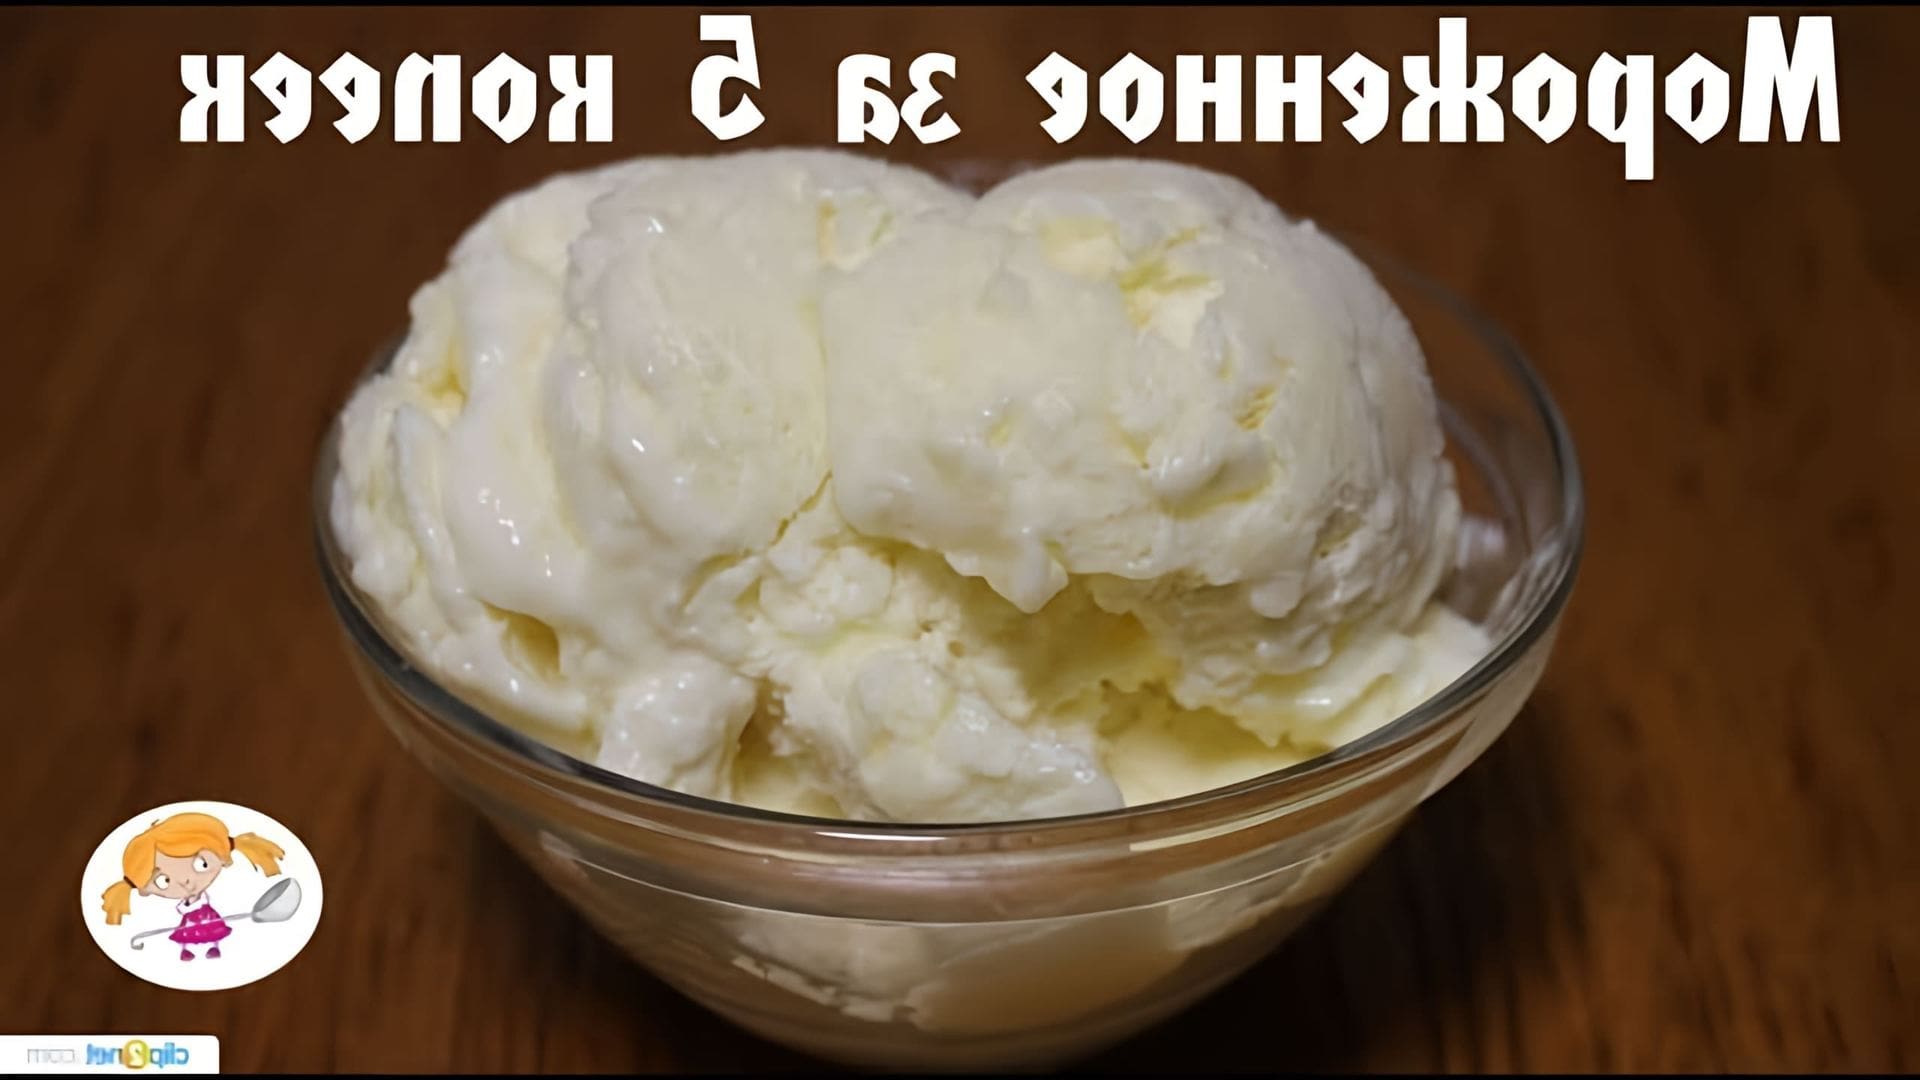 В этом видео Ольга показывает, как приготовить домашнее мороженое всего за 5 копеек